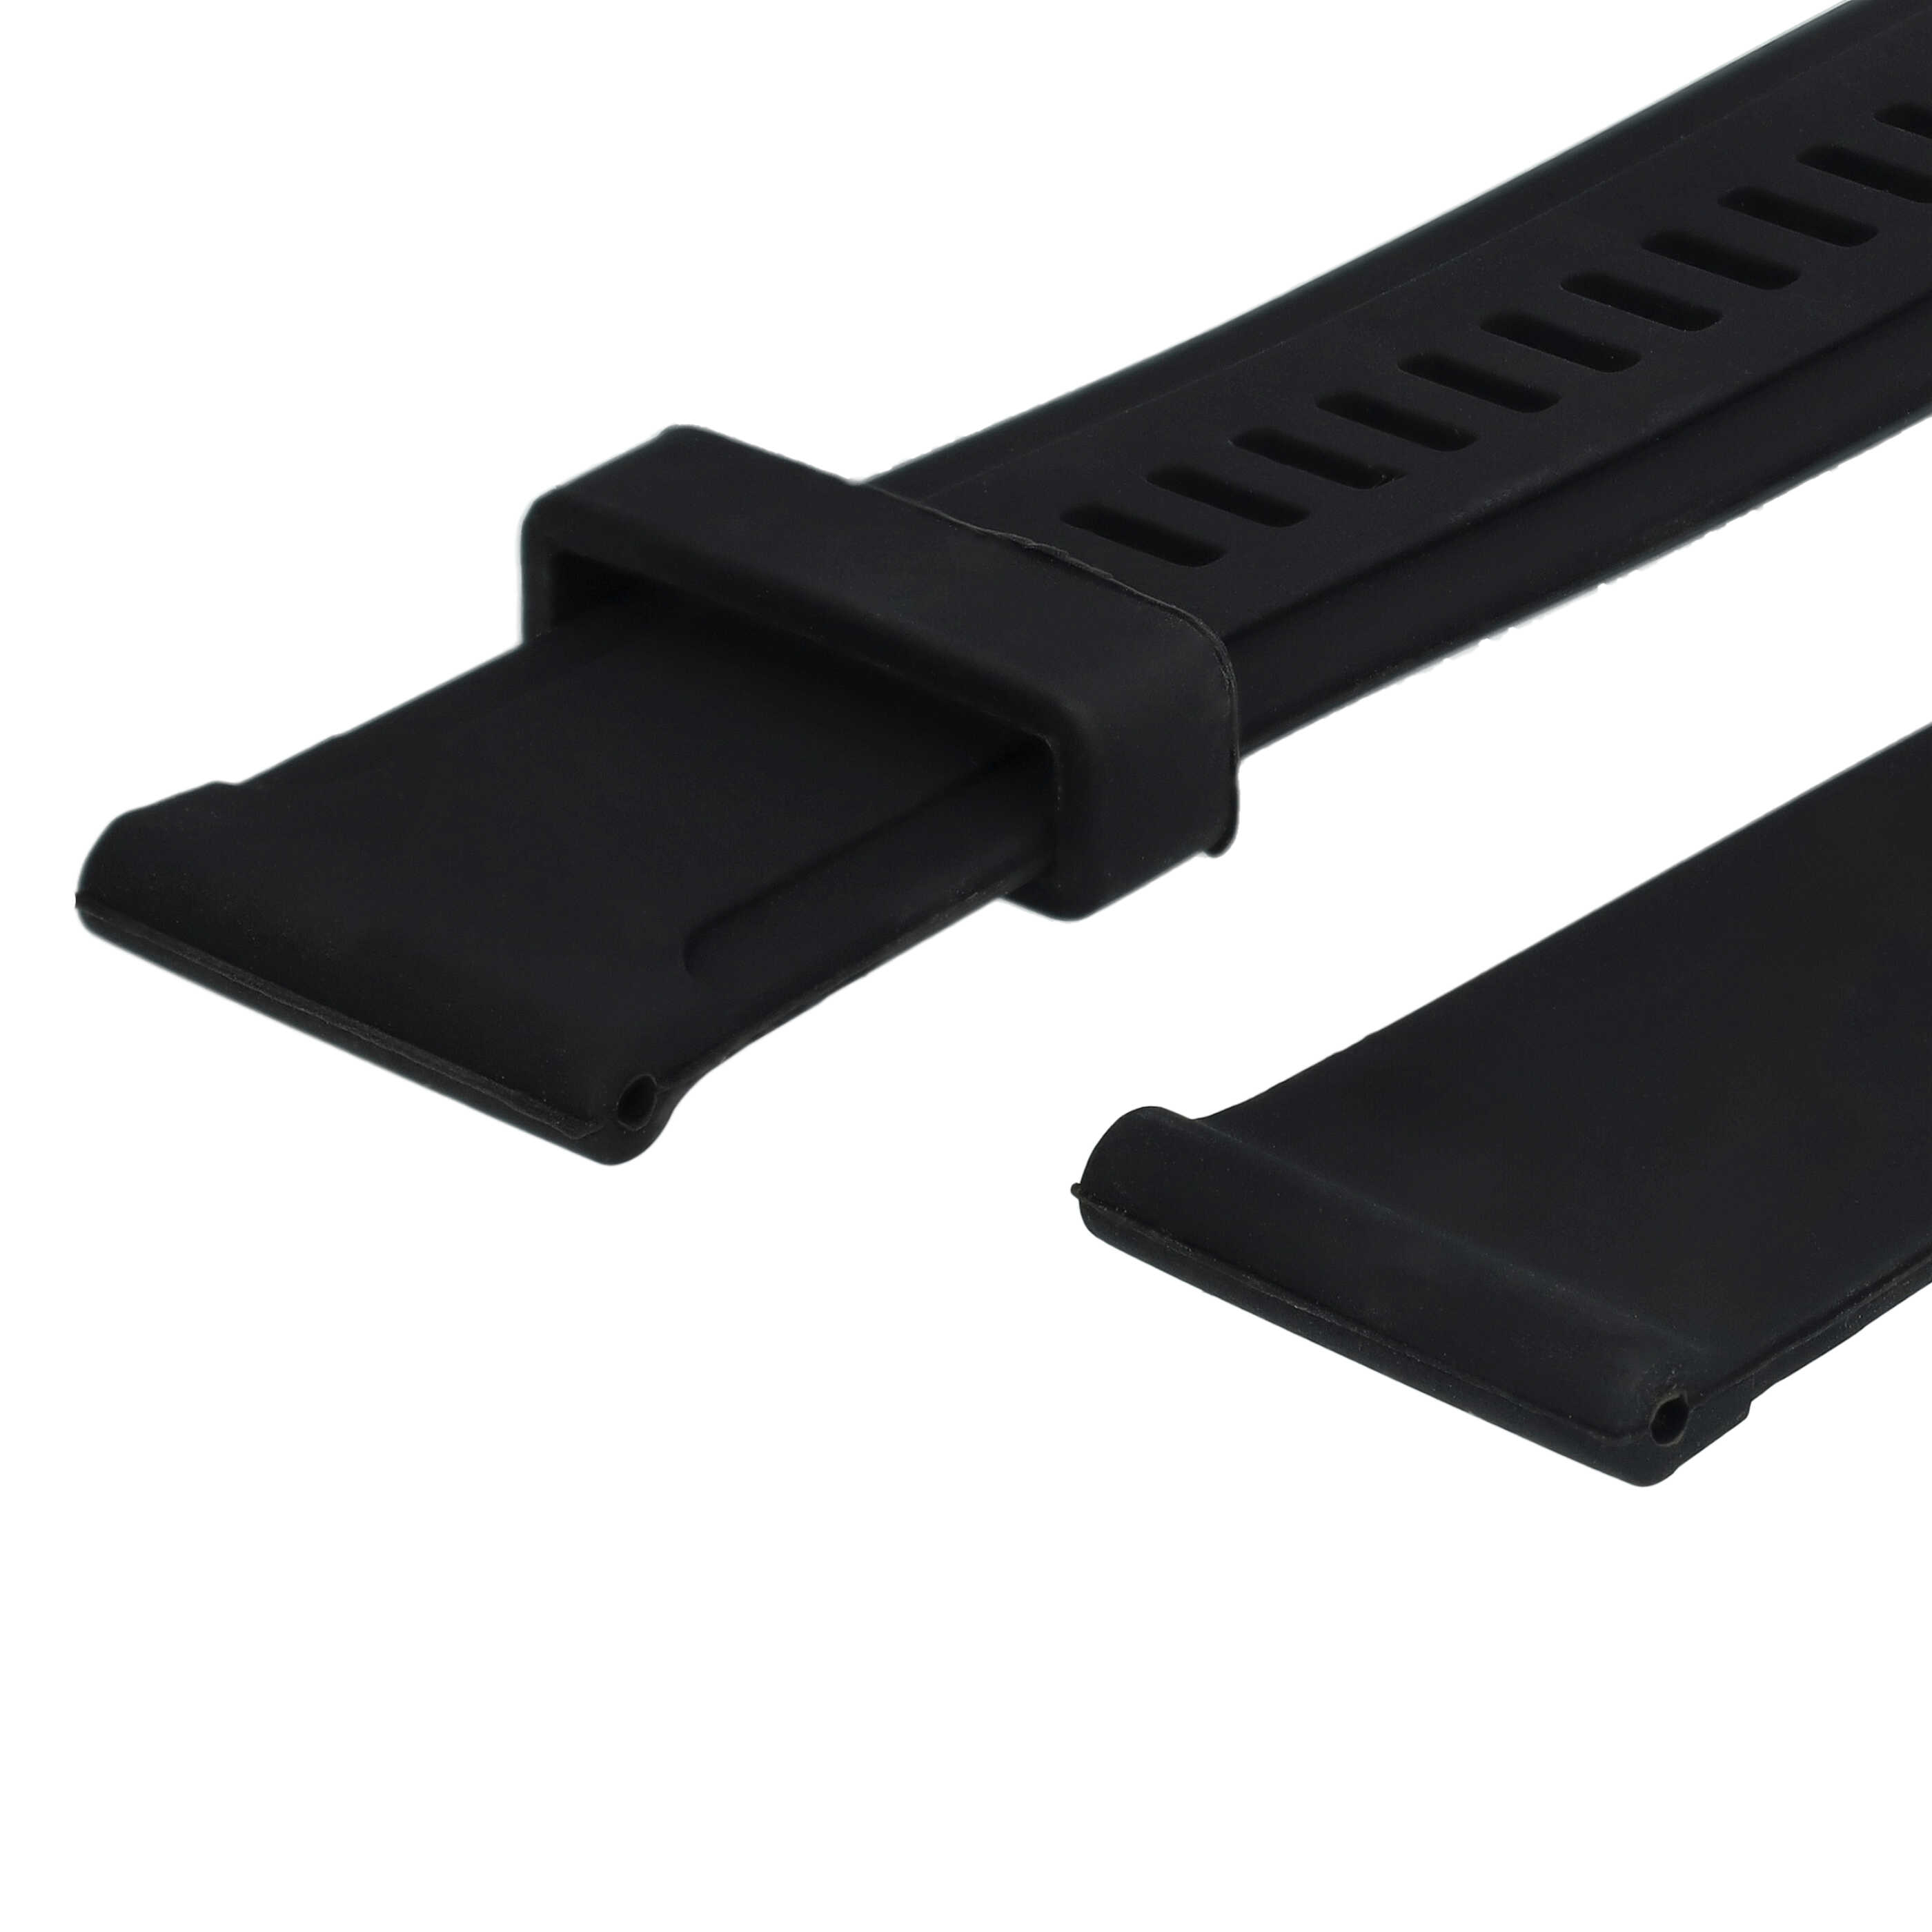 cinturino L per Suunto Smartwatch - 12,5cm + 8,5 cm lunghezza, silicone, nero